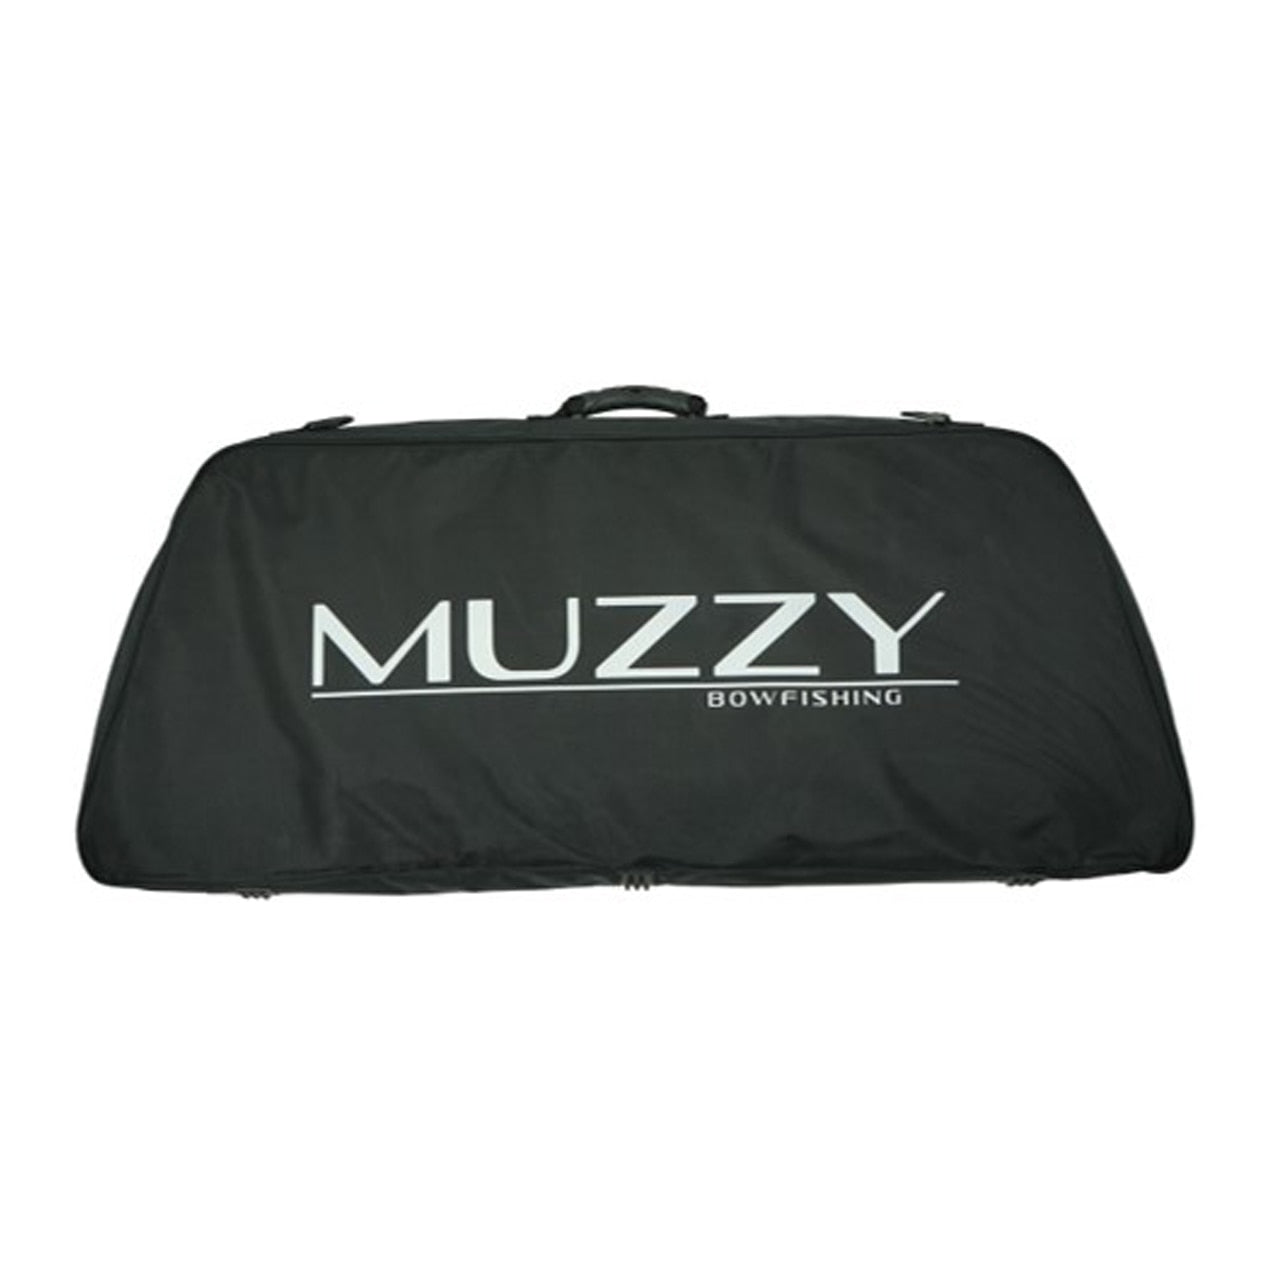 Muzzy - Bowfishing - Bow Case